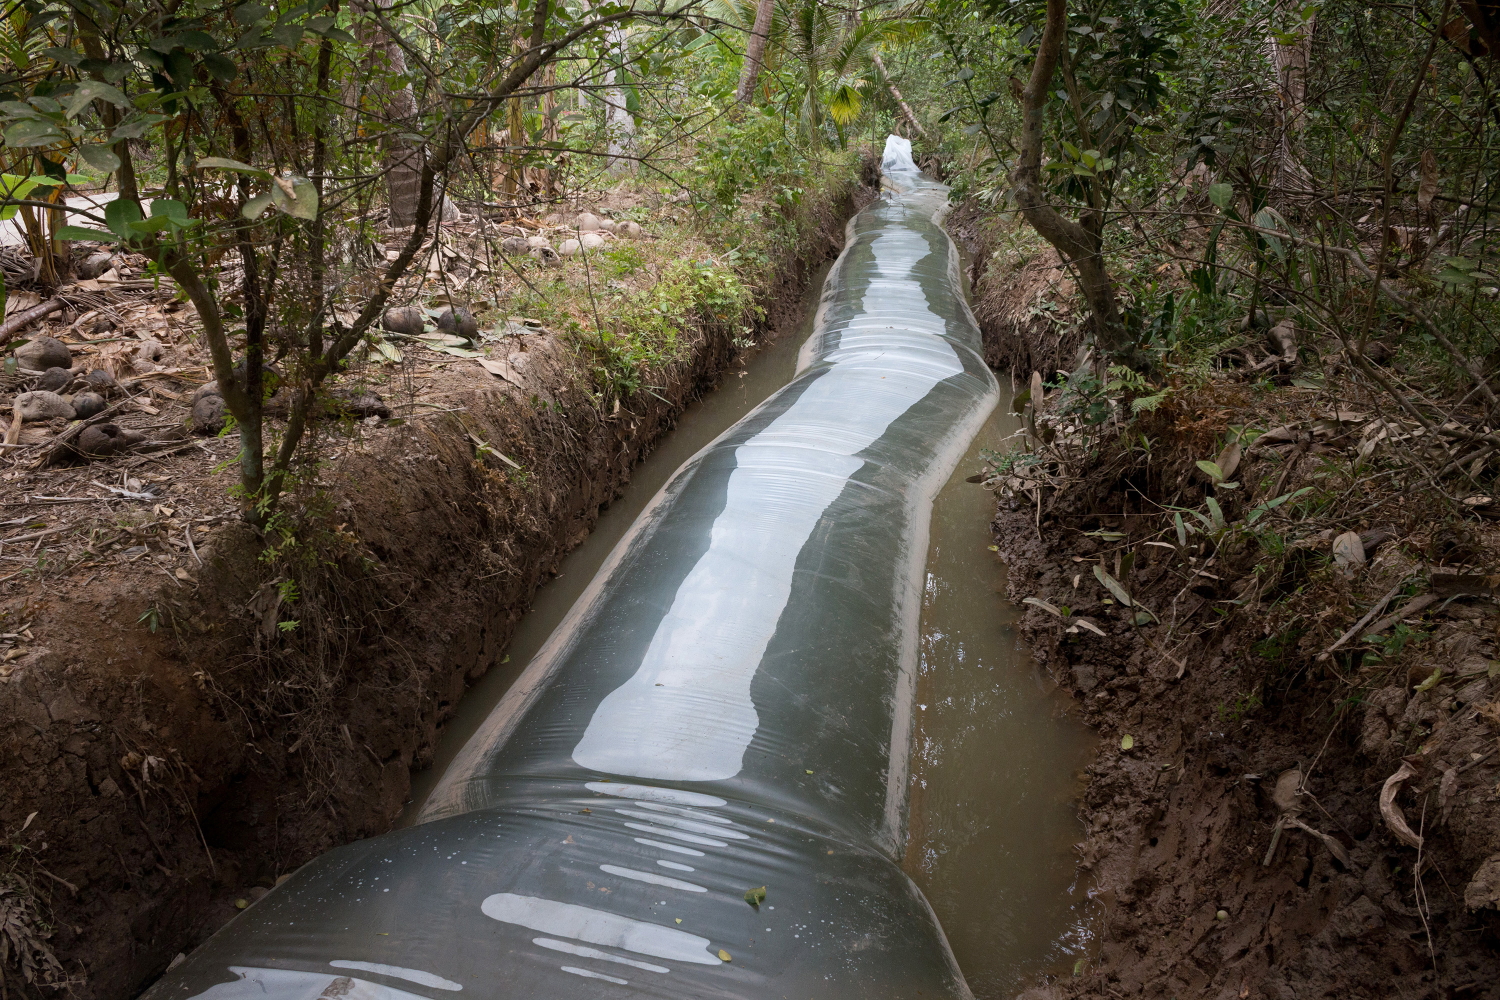 Nước ngọt được trữ trong túi ni-lon khổng lồ ở huyện Giồng Trôm (tỉnh Bến Tre).